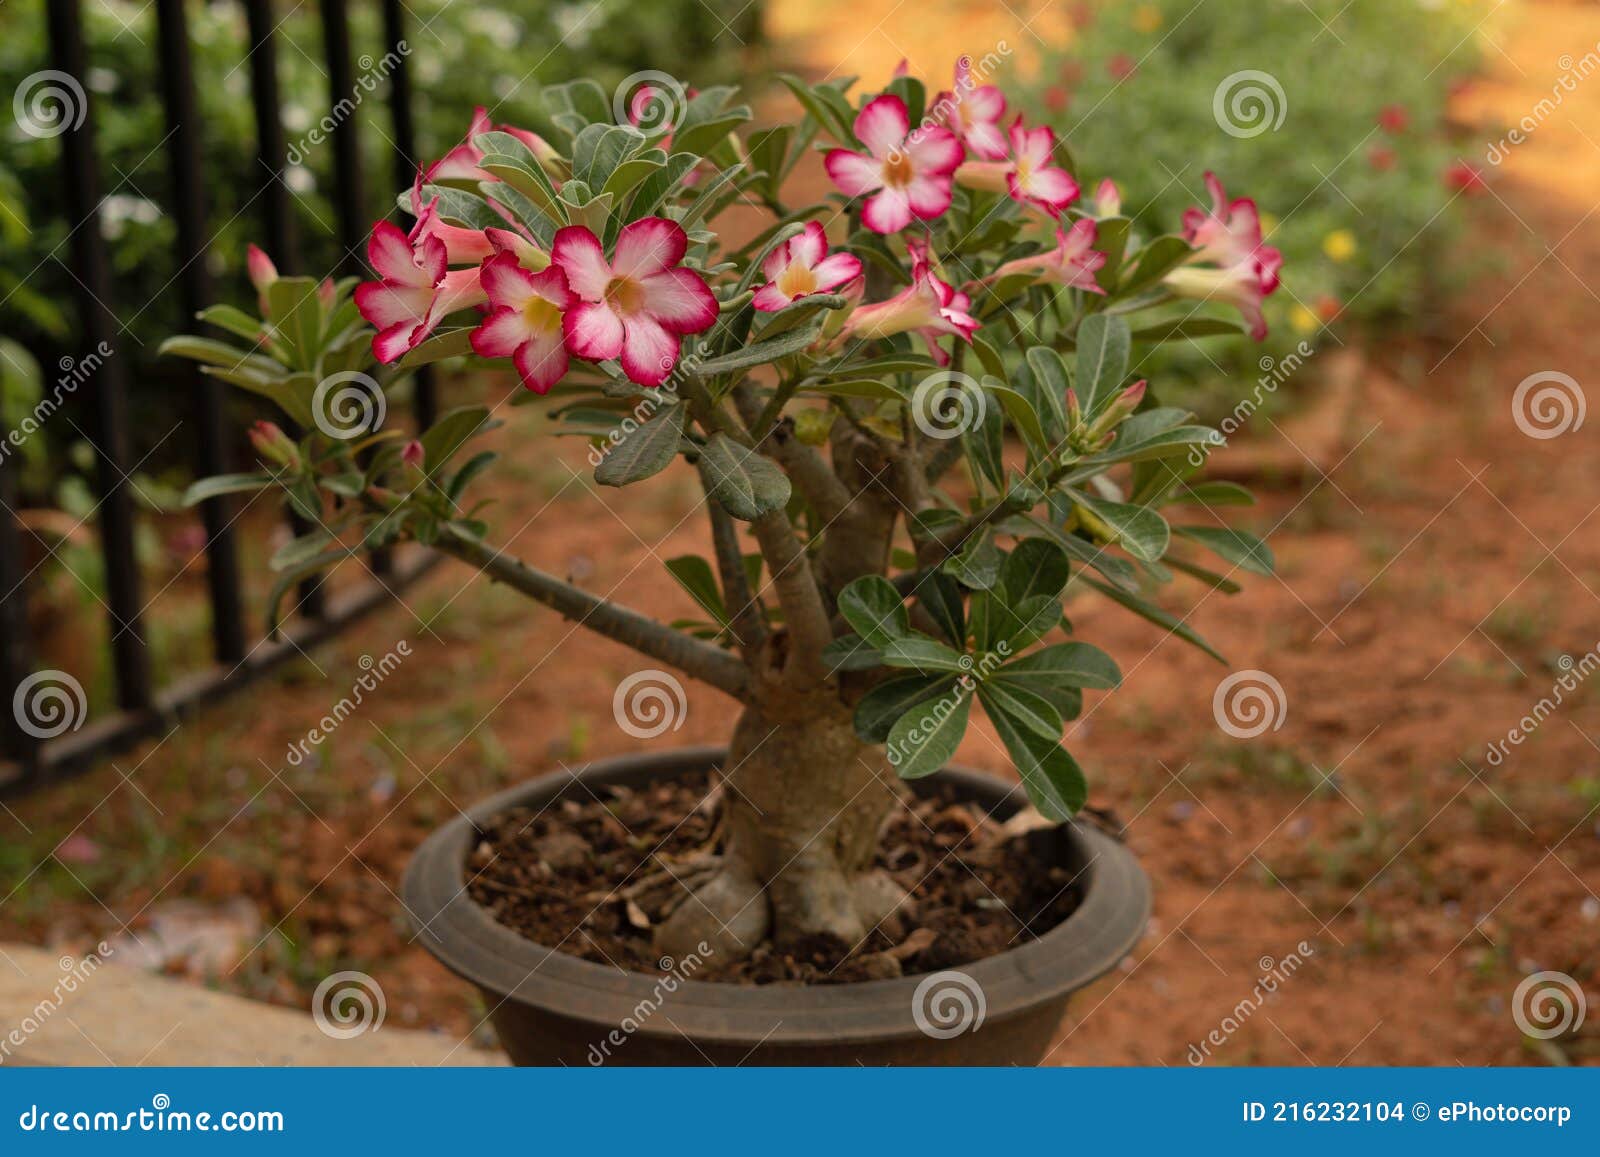 Rose Du Désert Plante à Fleur Unique Adenium Obesum Photo stock